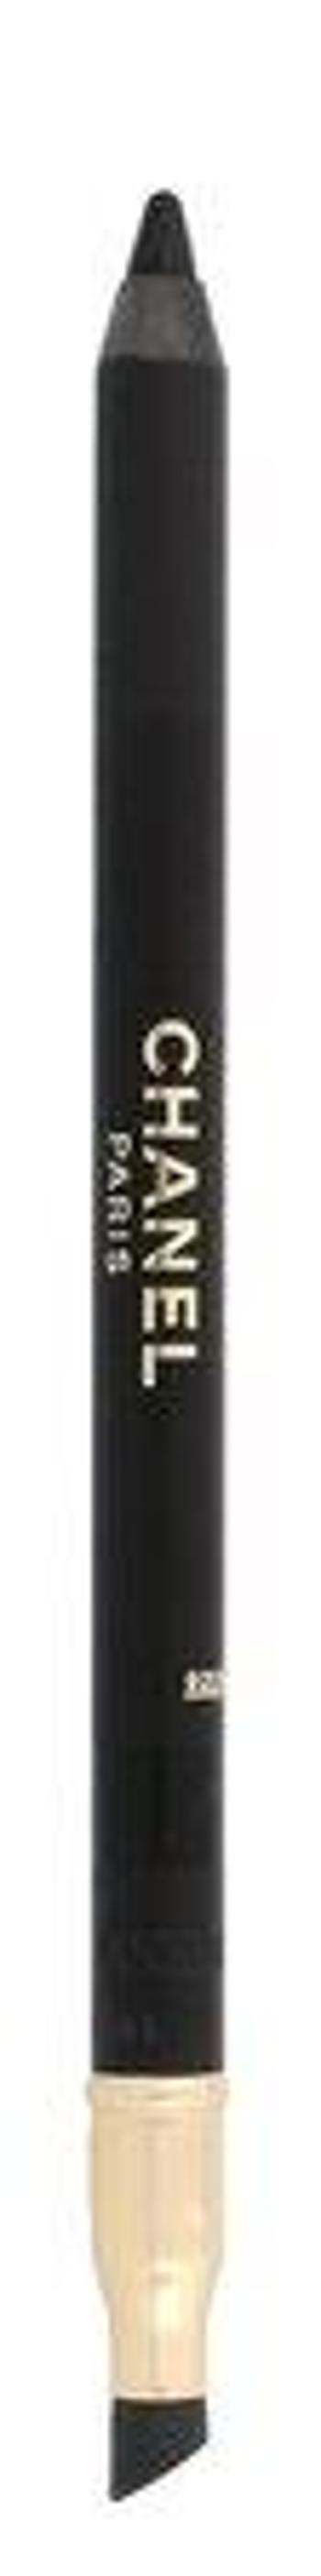 Chanel Tužka na oči s ořezávátkem Le Crayon Yeux (Precision Eye Definer) 1 g 01 Noir Black, 1ml